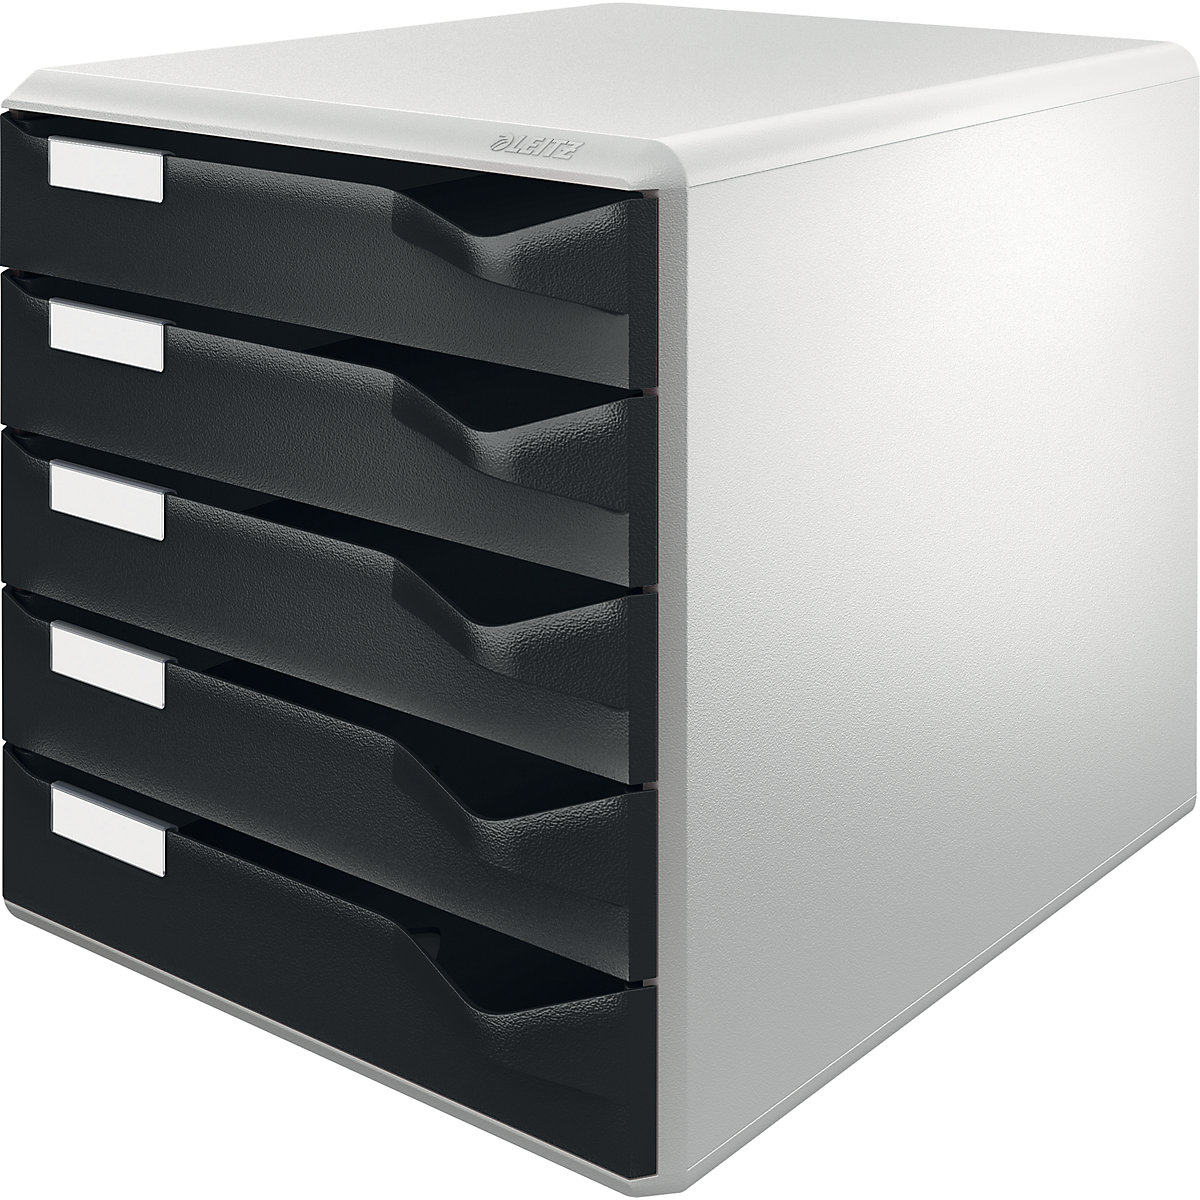 Pojemnik – Leitz, zestaw pojemników na pocztę i formularze, kolor obudowy: szary, kolor szuflad: czarny, 5 szuflad